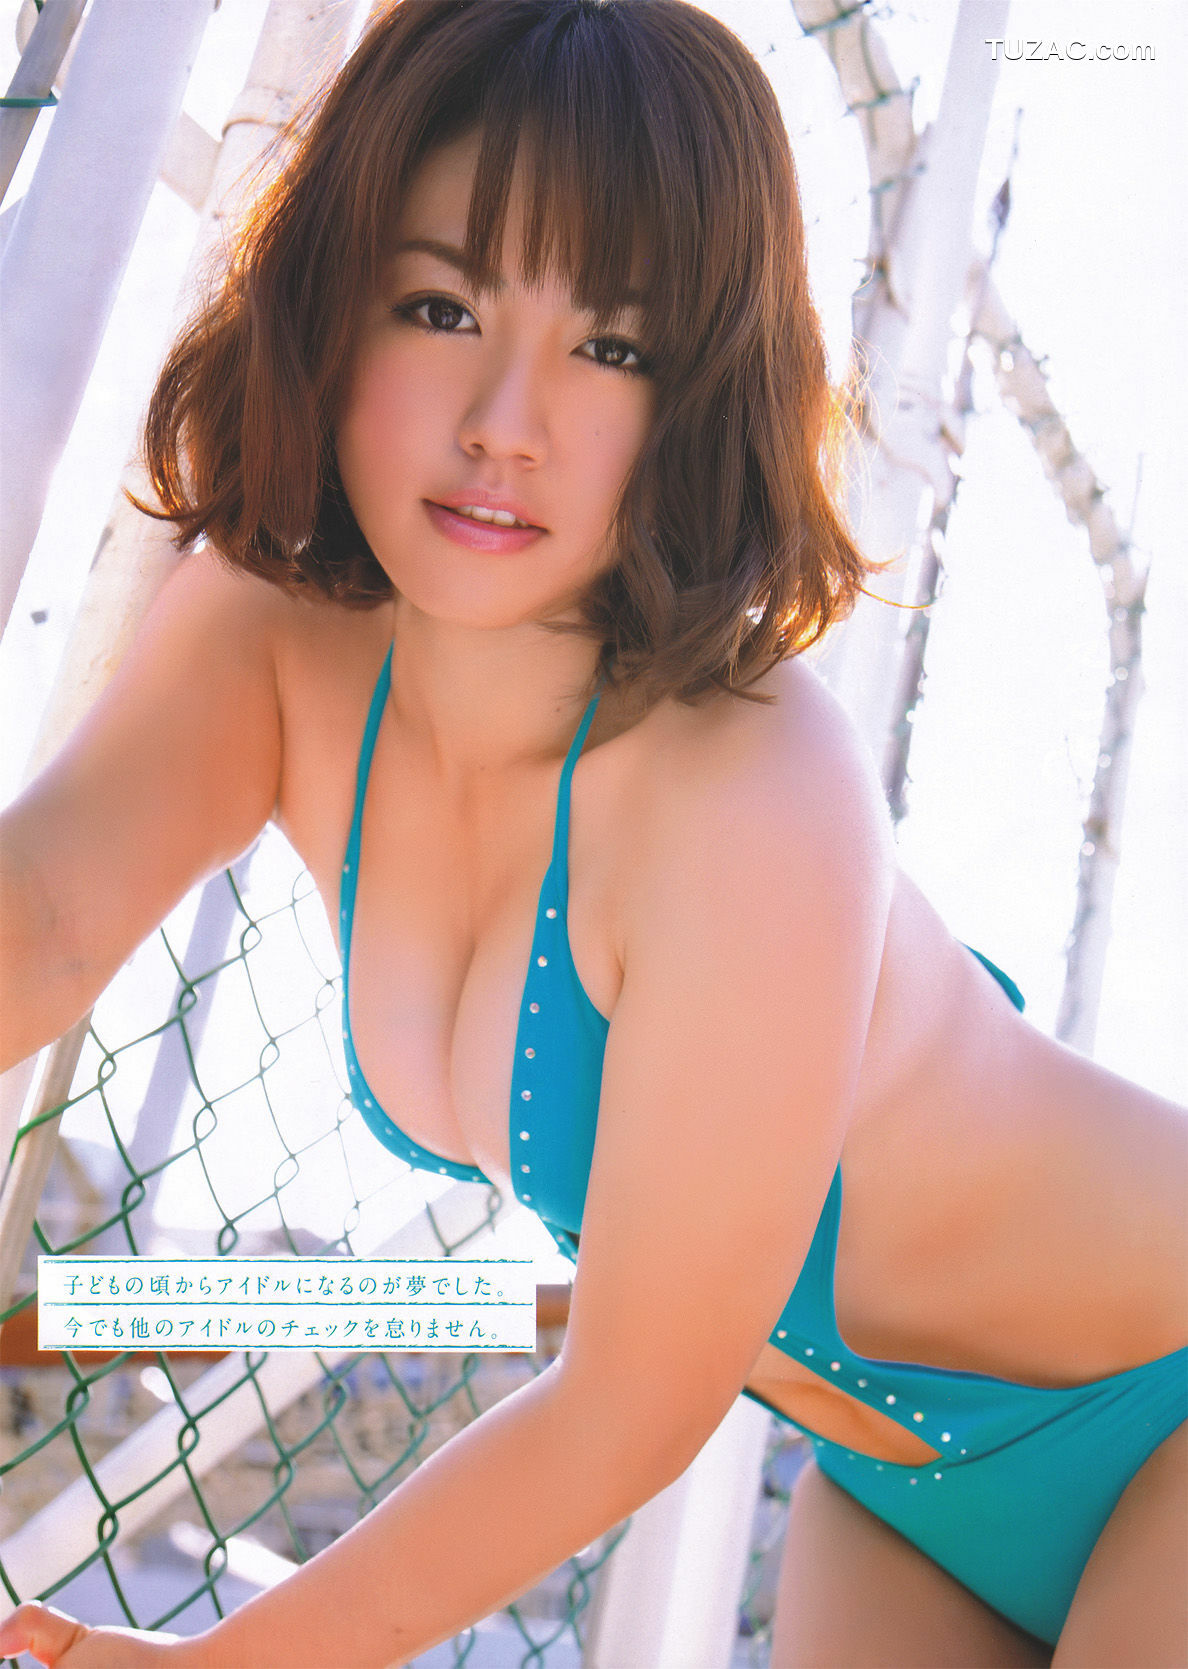 Young Magazine杂志写真_ 磯山さやか Sayaka Isoyama 2011年No.19 写真杂志[14P]